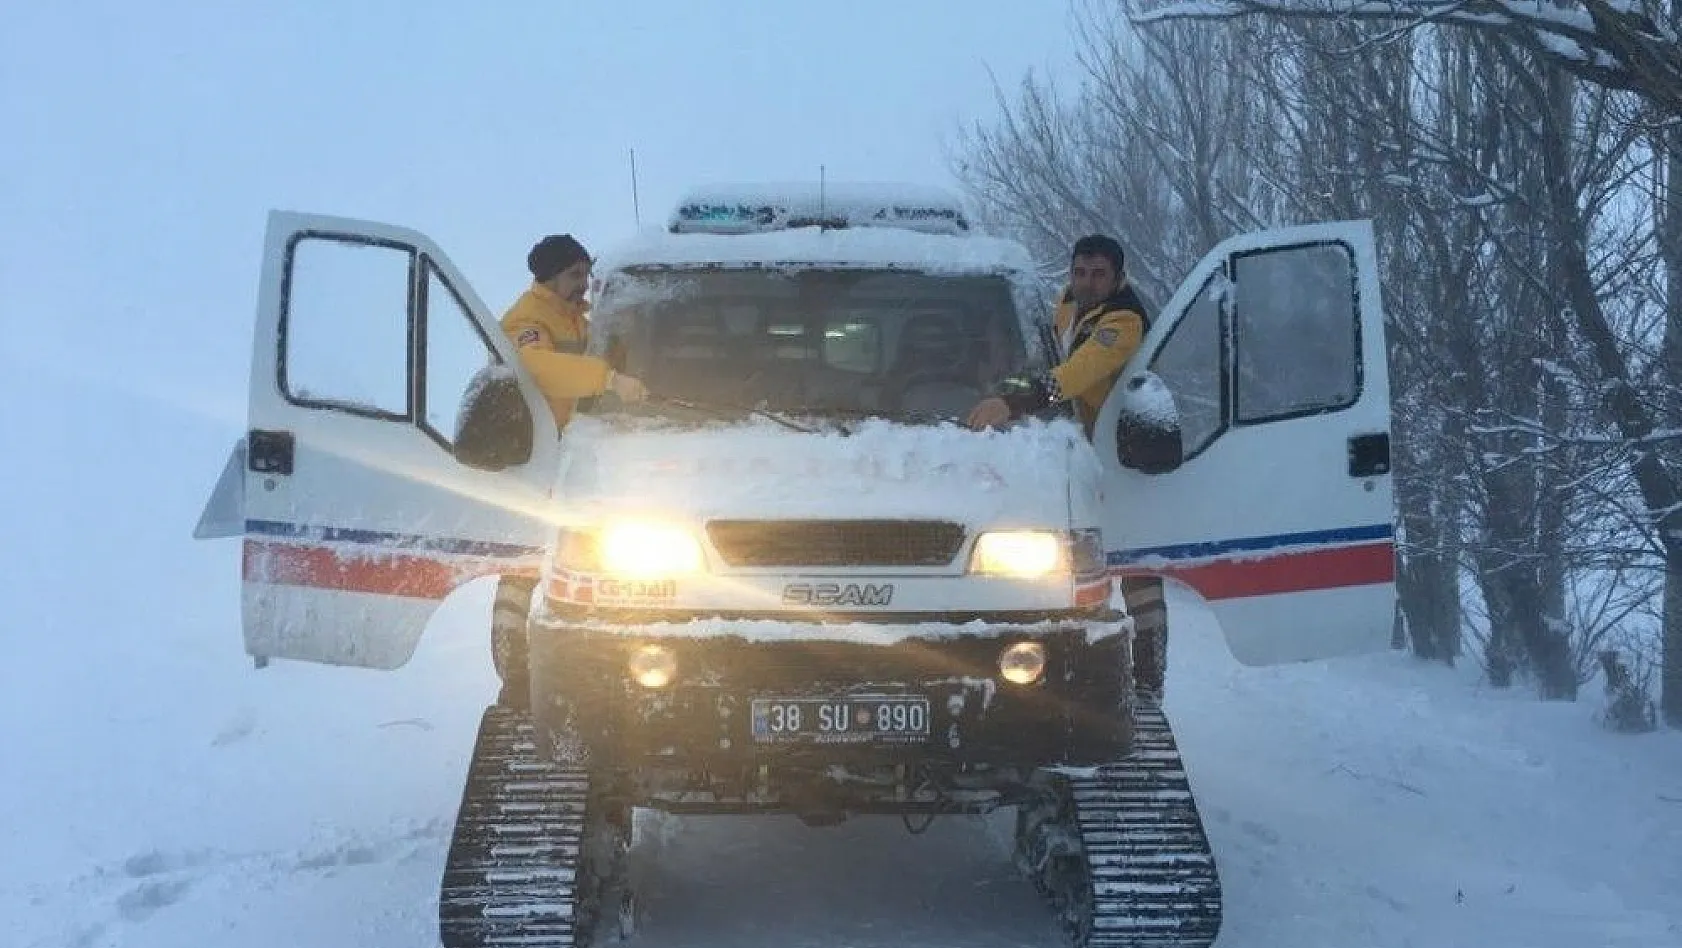 112 ekipleri yoğun kar yağışı altında hastaların çağrısına paletli ambulansla ulaştı